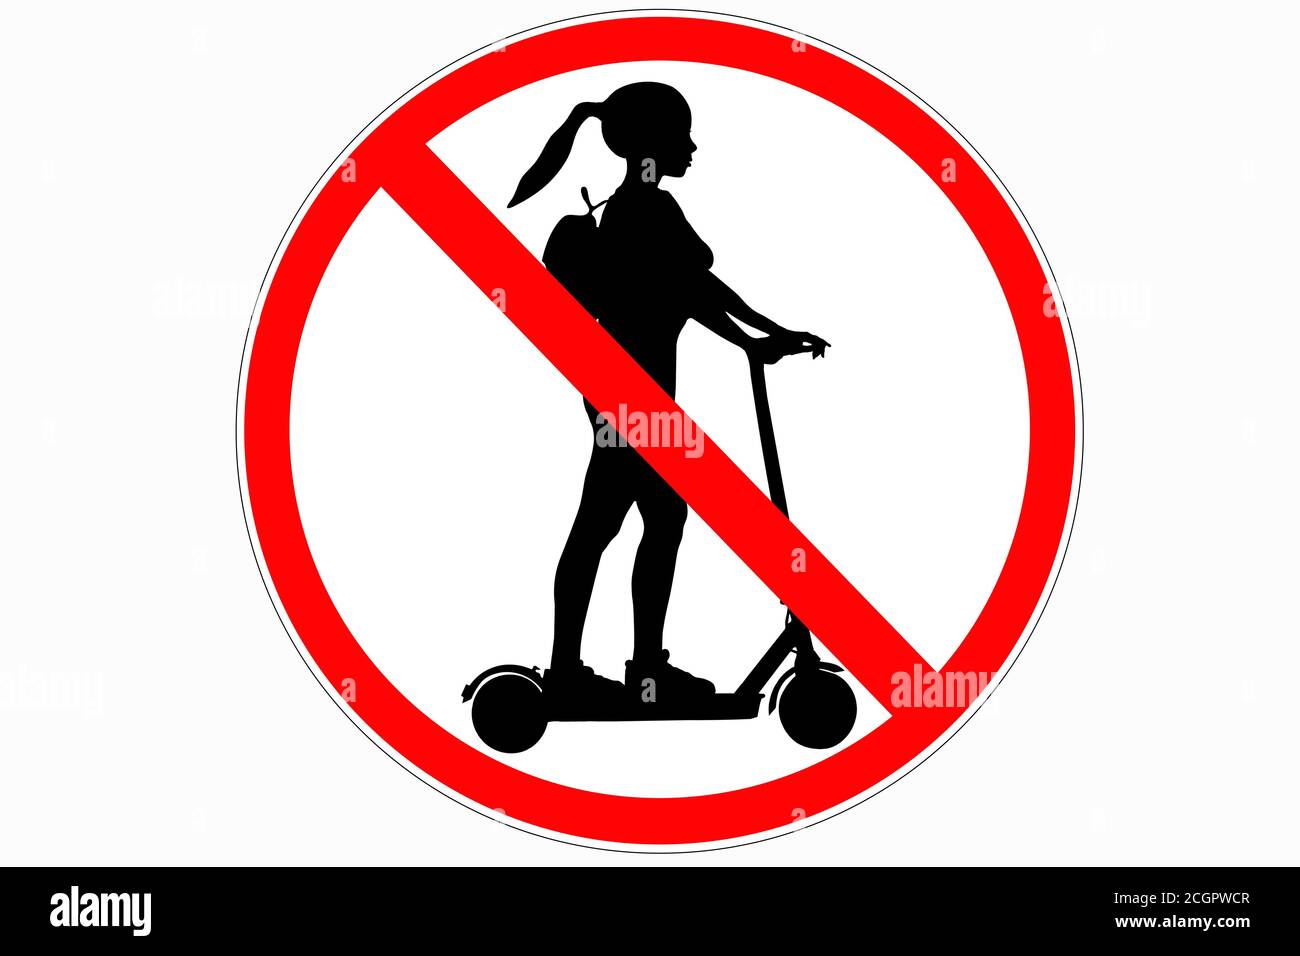 Signalisation routière interdisant le scooter électrique. Image d'une femme sur un scooter électrique avec un sac à dos. Route rouge. Illustration d'une arnaque électrique non autorisée Banque D'Images